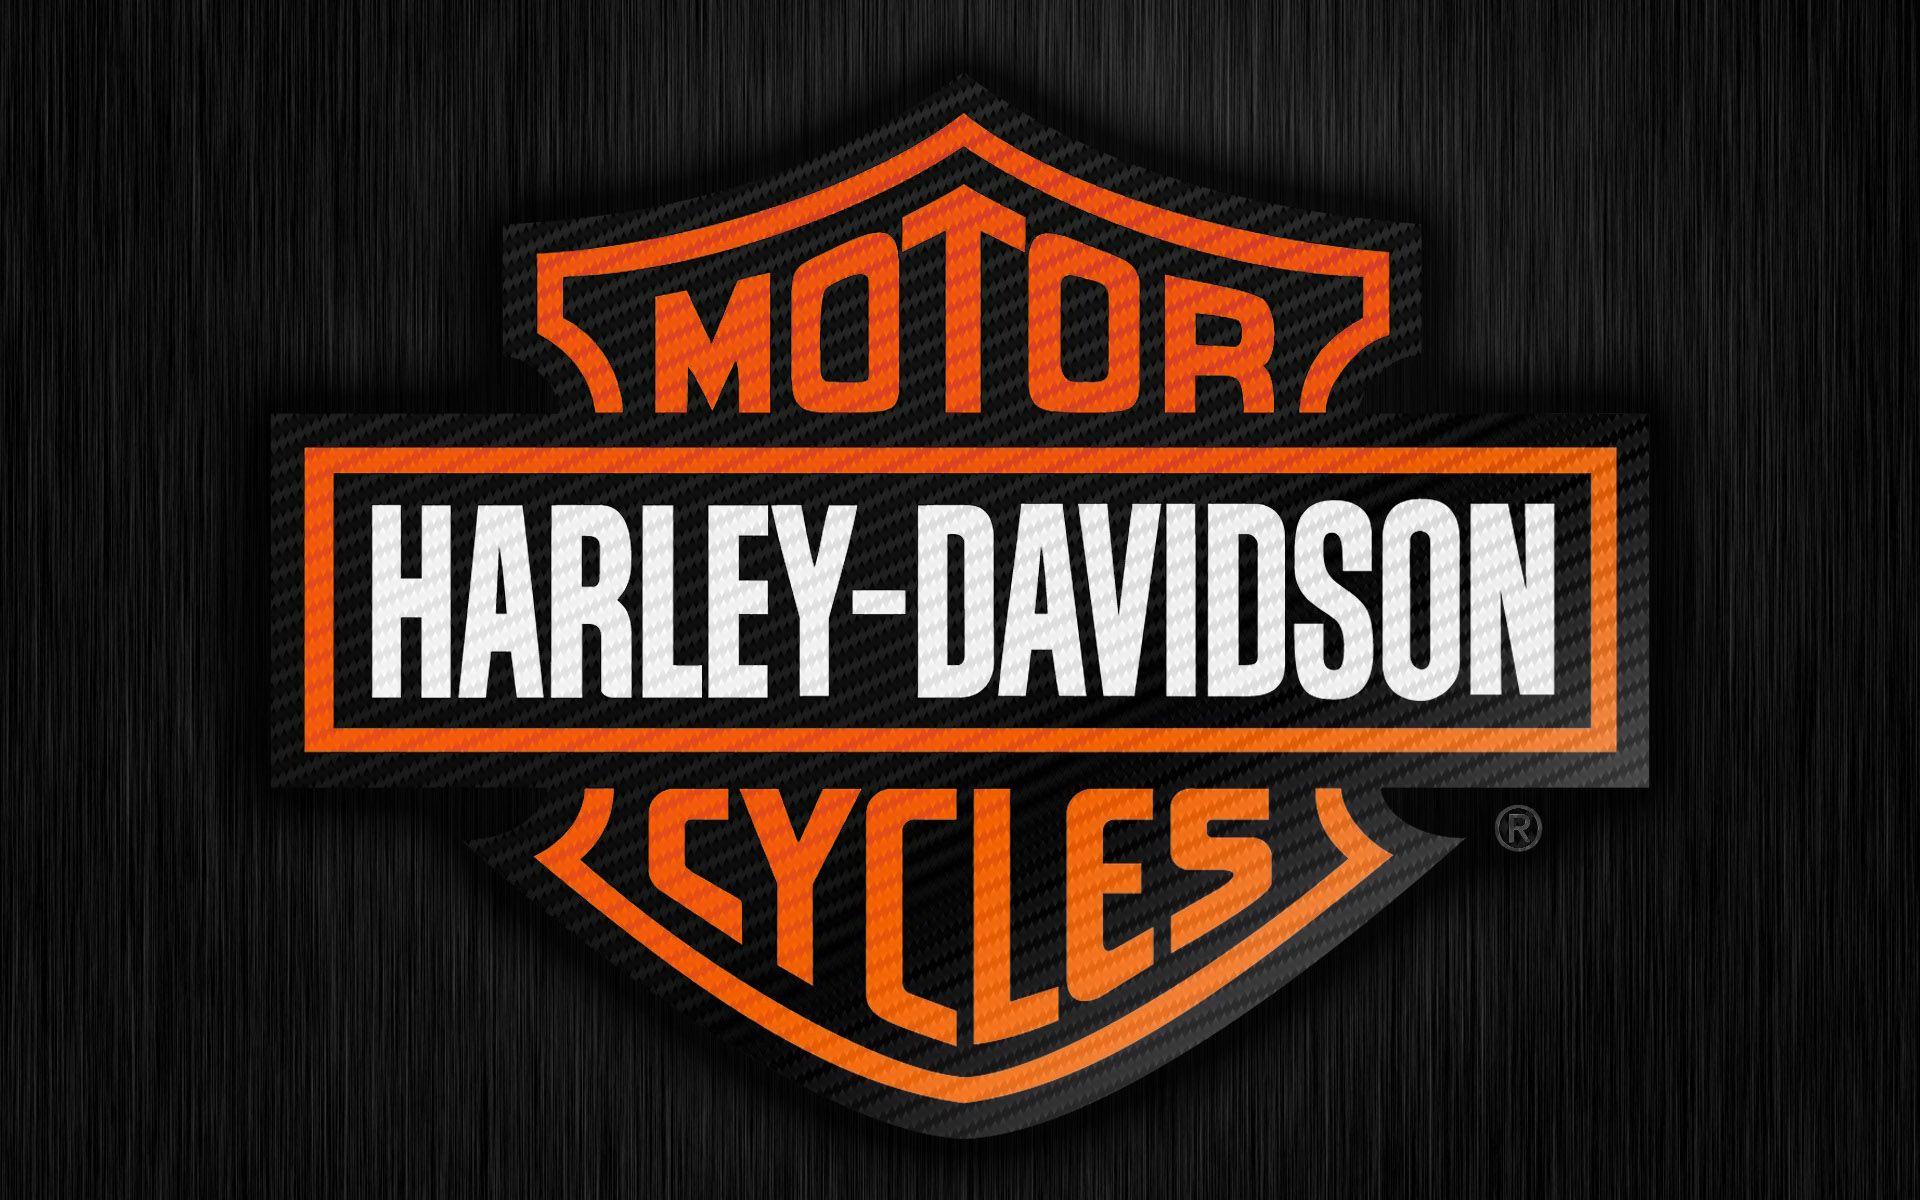 Harley Davidson Logo Wallpaper Free Harley Davidson